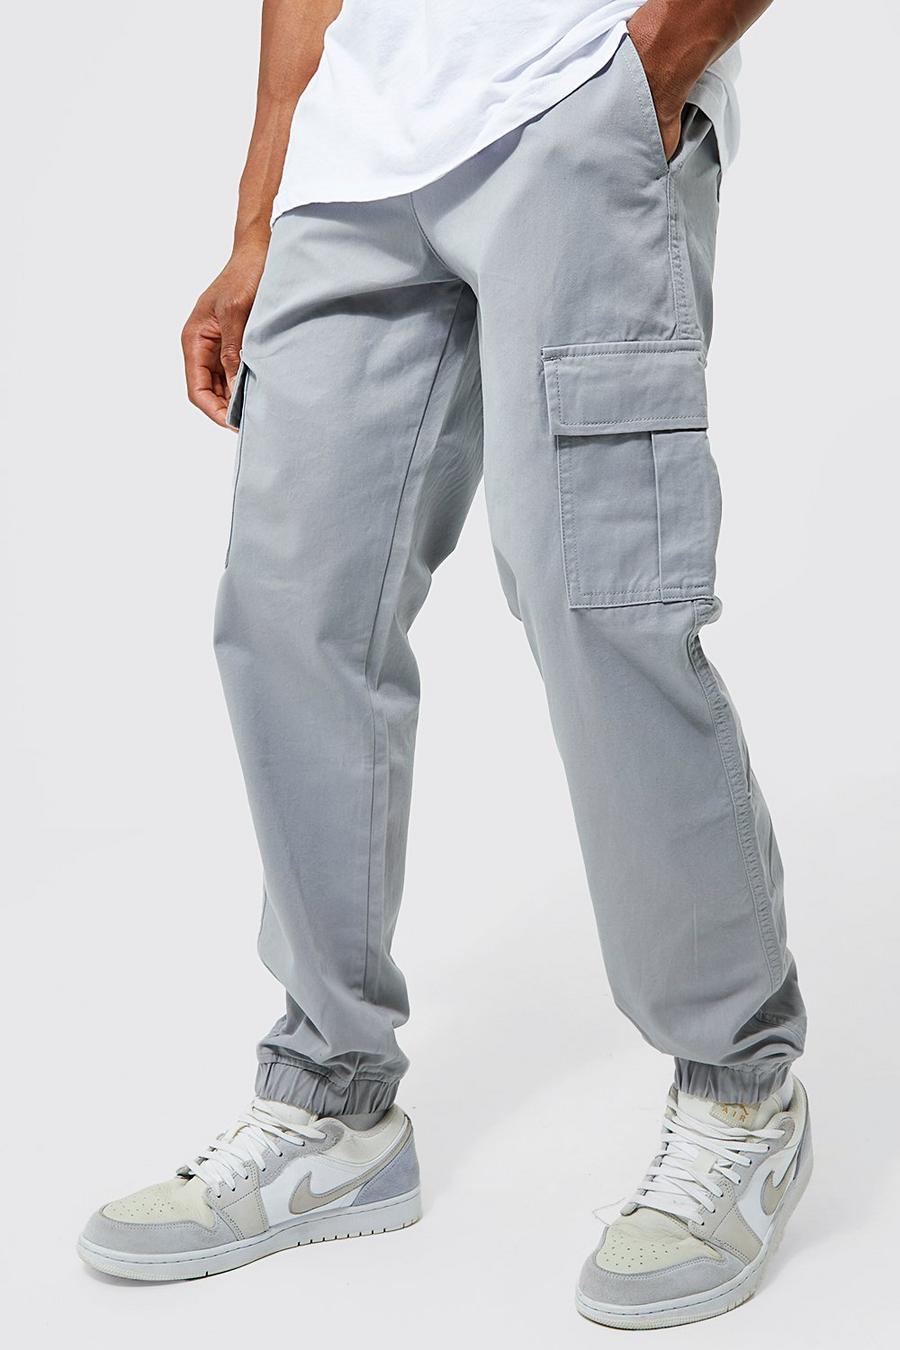 Grey grigio מכנסי דגמ'ח טוויל בגזרה צרה